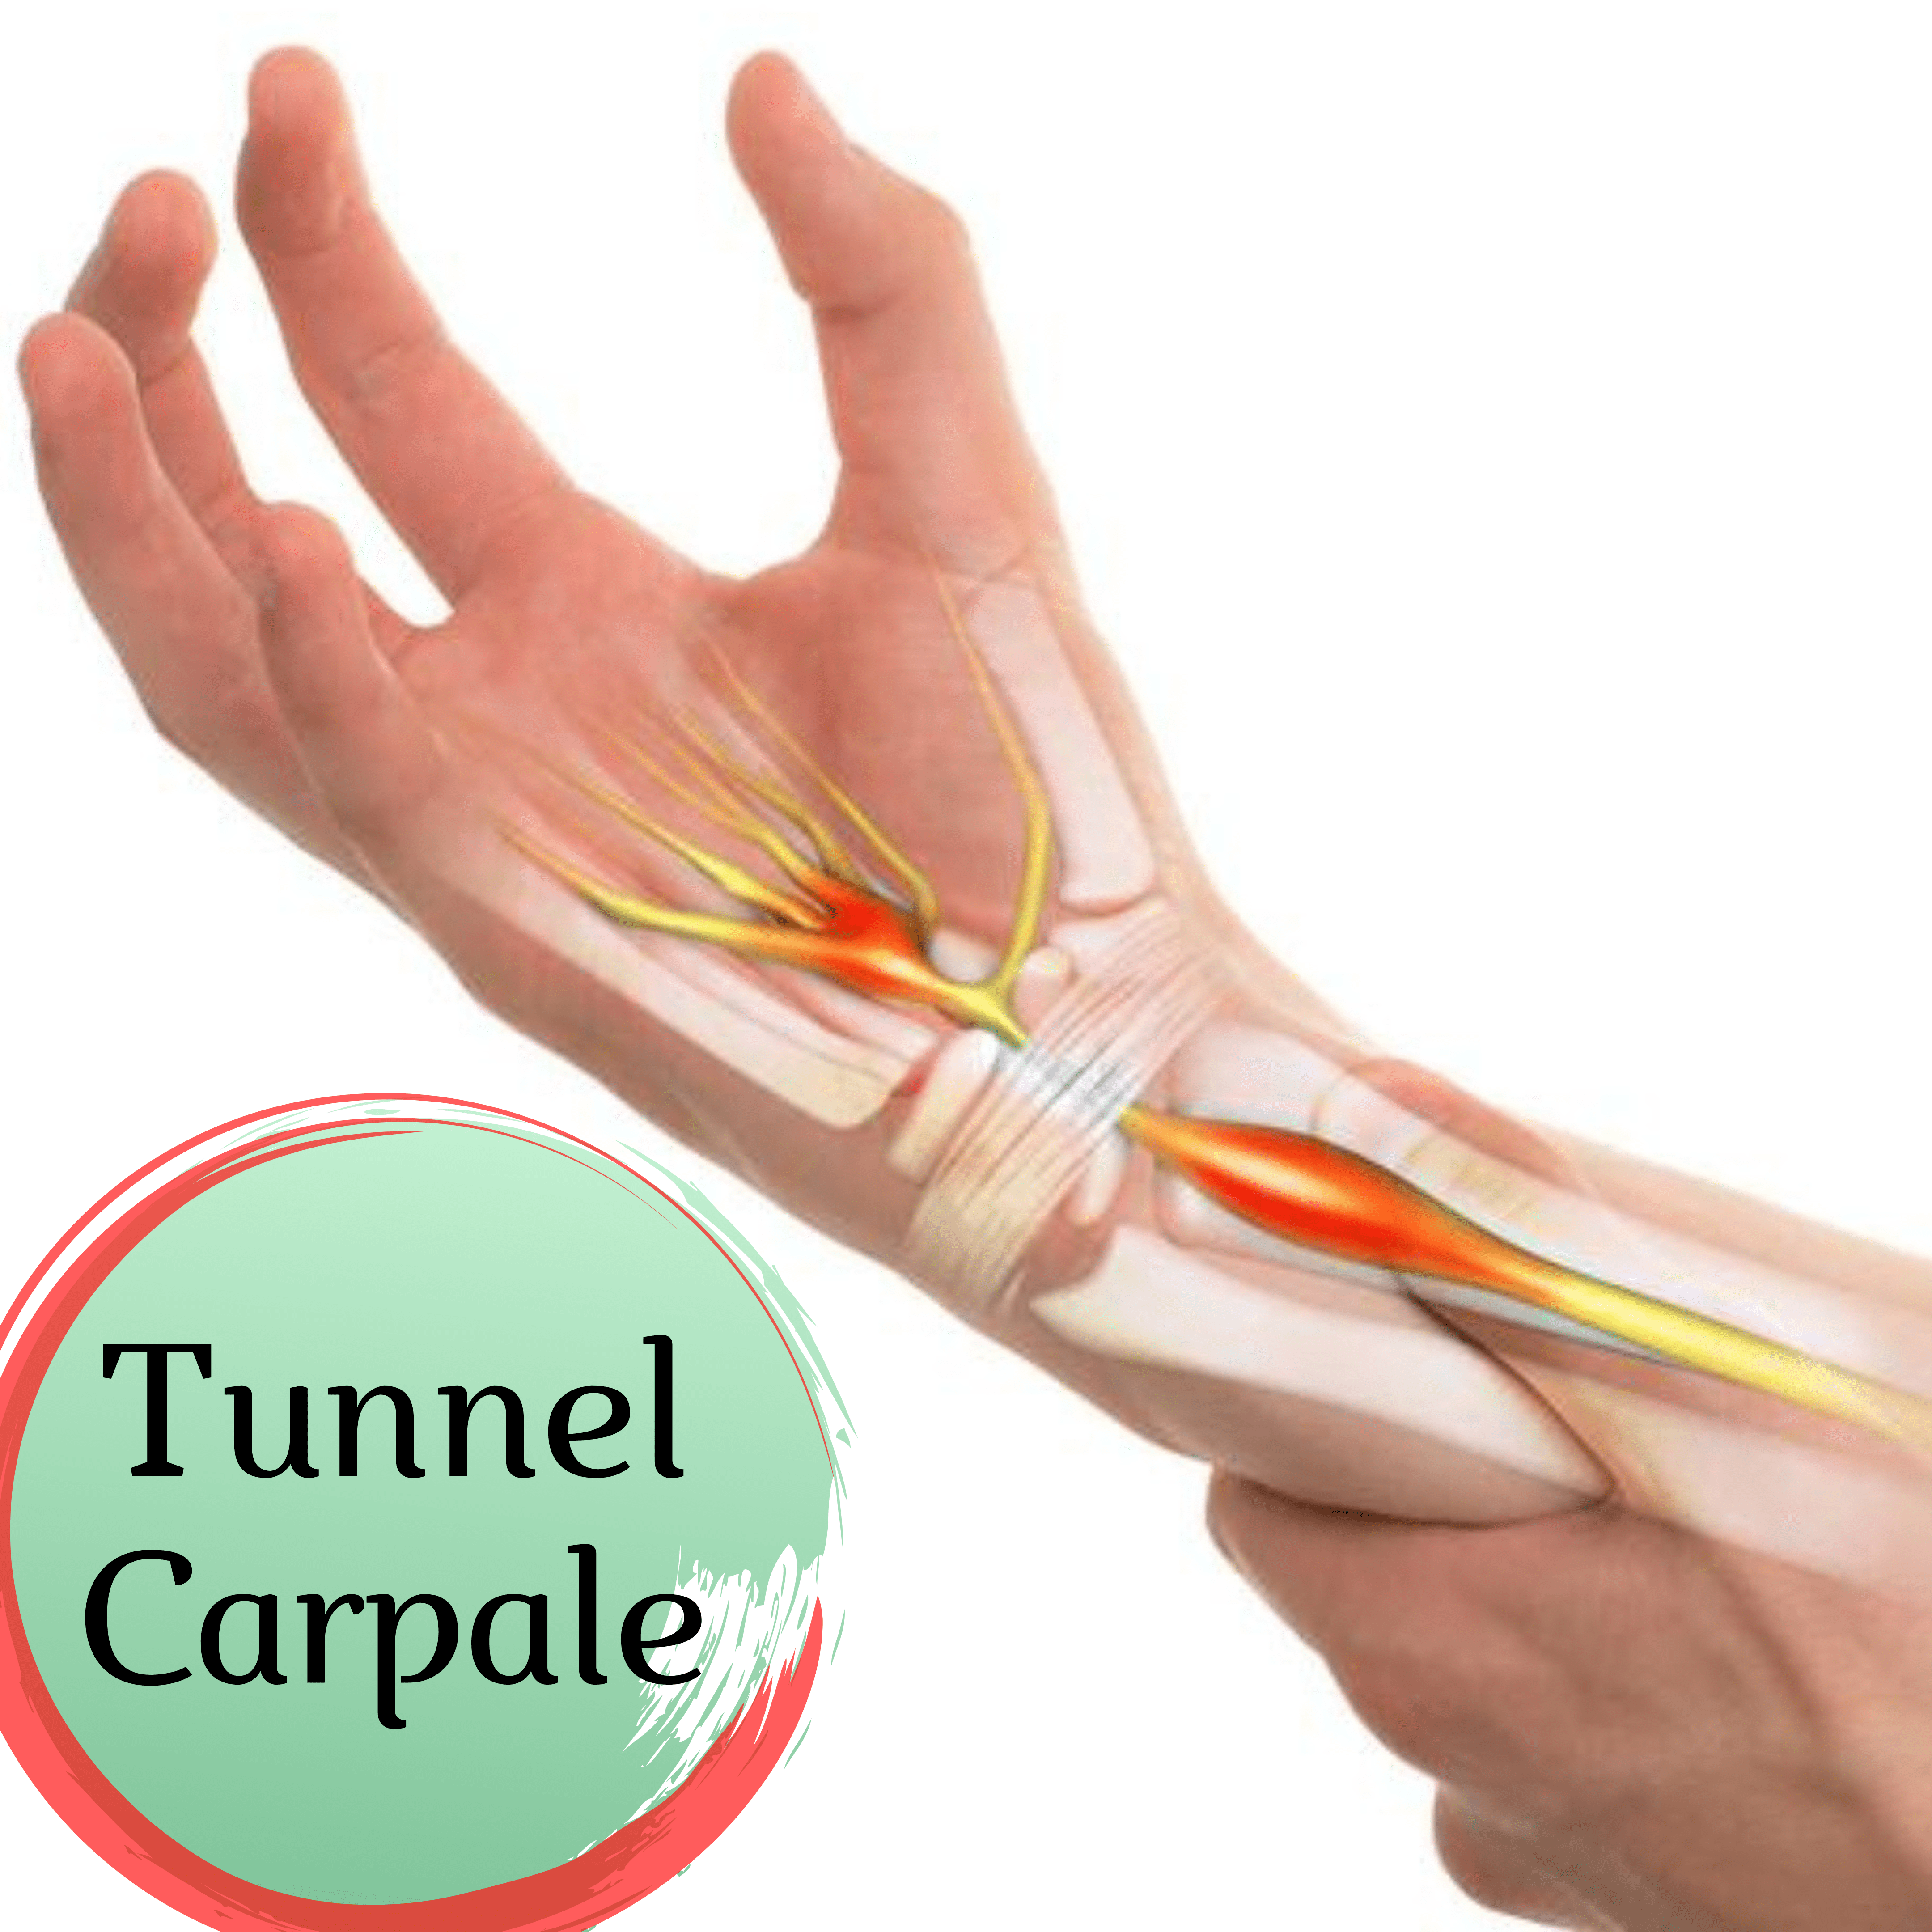 OTR Ortopedia - Tunnel carpale - Dr. Gibaud